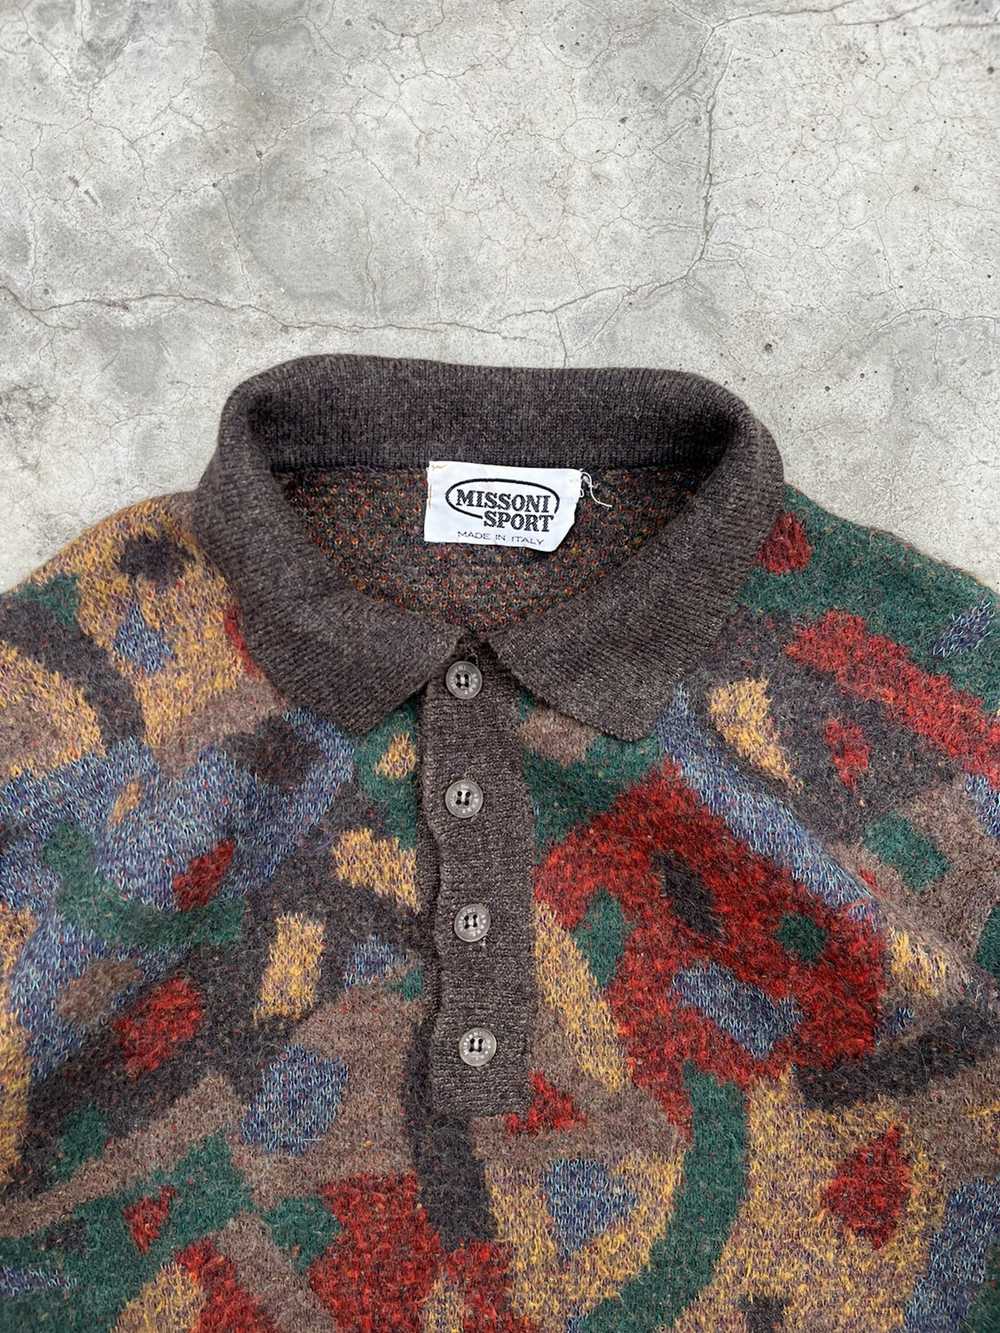 Missoni × Streetwear Vintage Mission sport sweater - image 2